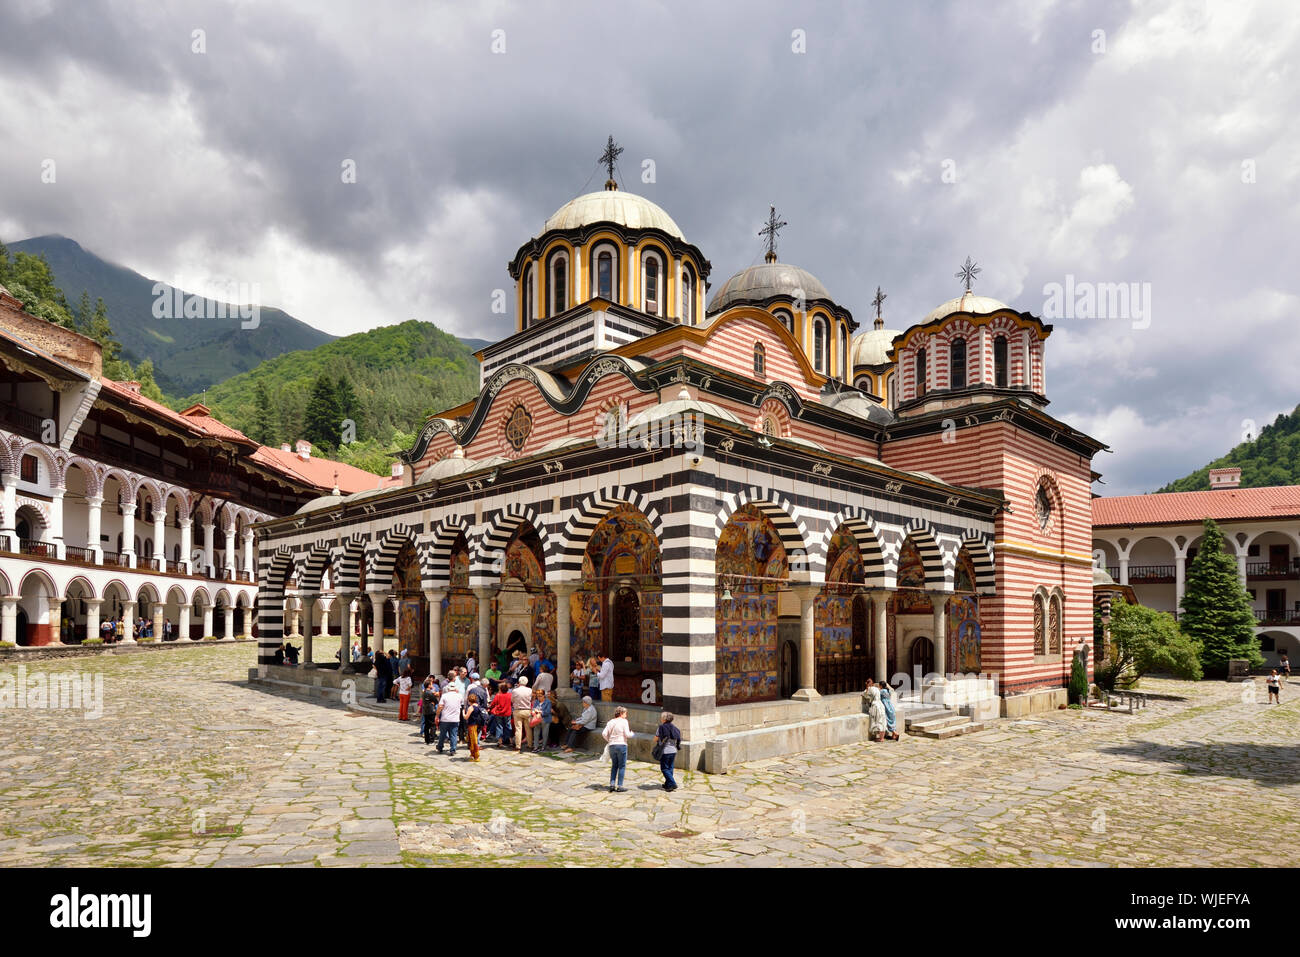 Monastère de Rila (Monastère de Saint Ivan de Rila), le plus grand monastère orthodoxe en Bulgarie. Site du patrimoine mondial de l'UNESCO. Bulgarie Banque D'Images